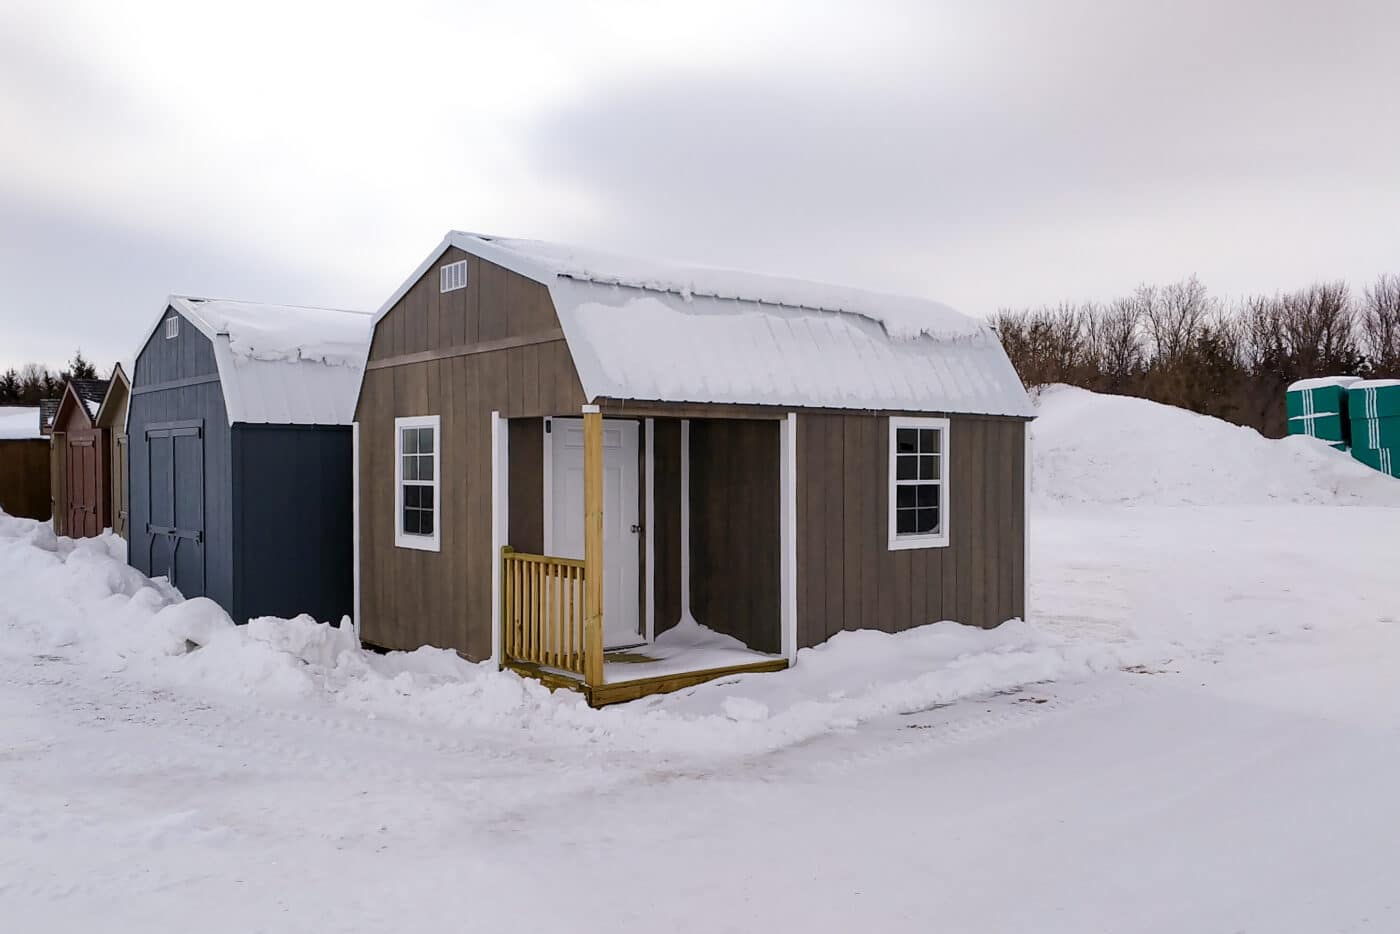 High Barn Cabin and lofted barn cabin in snow